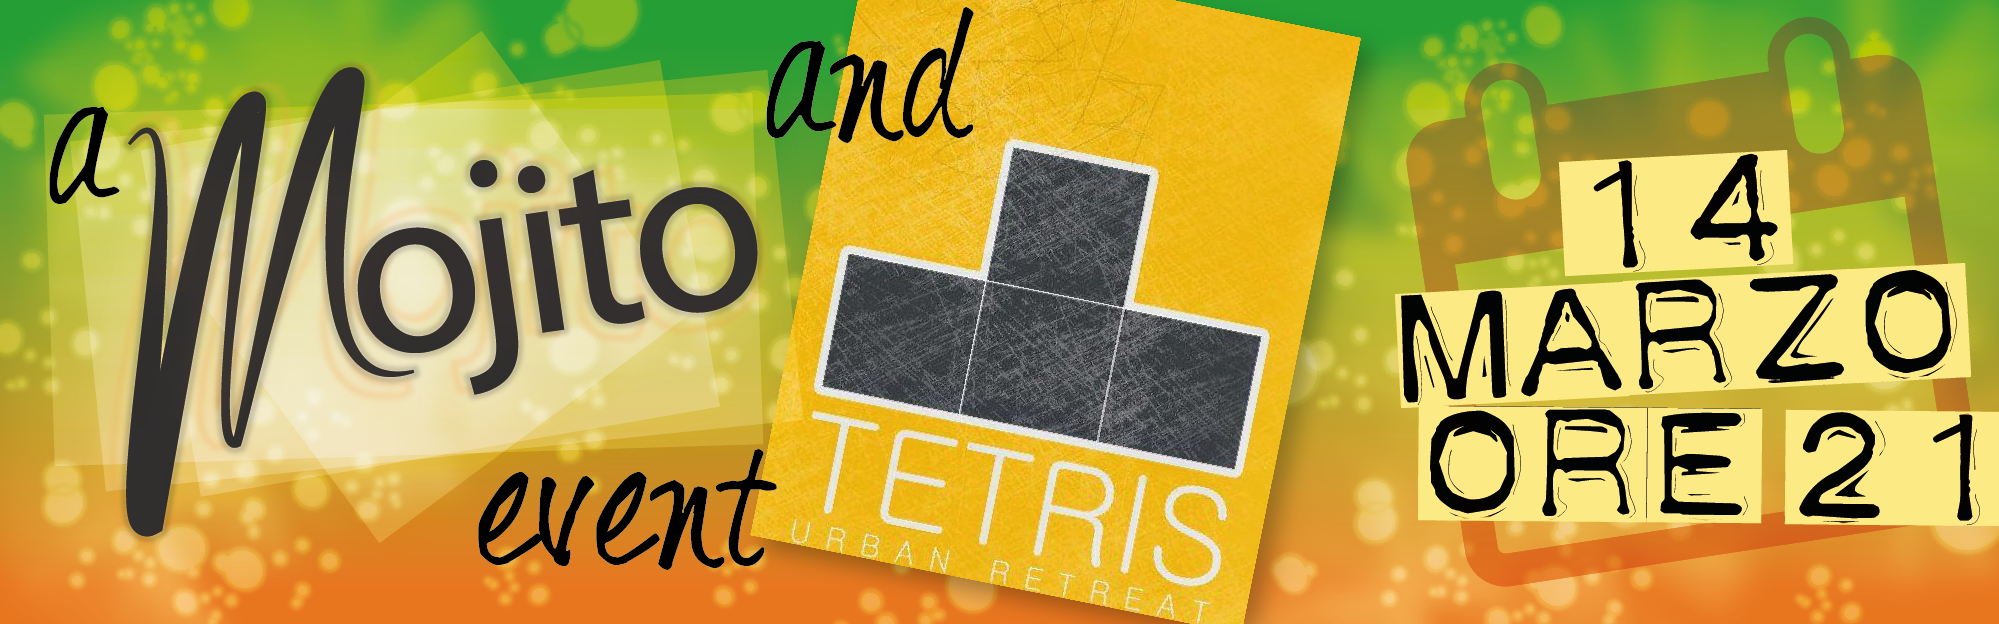 Locandina Evento Tetris